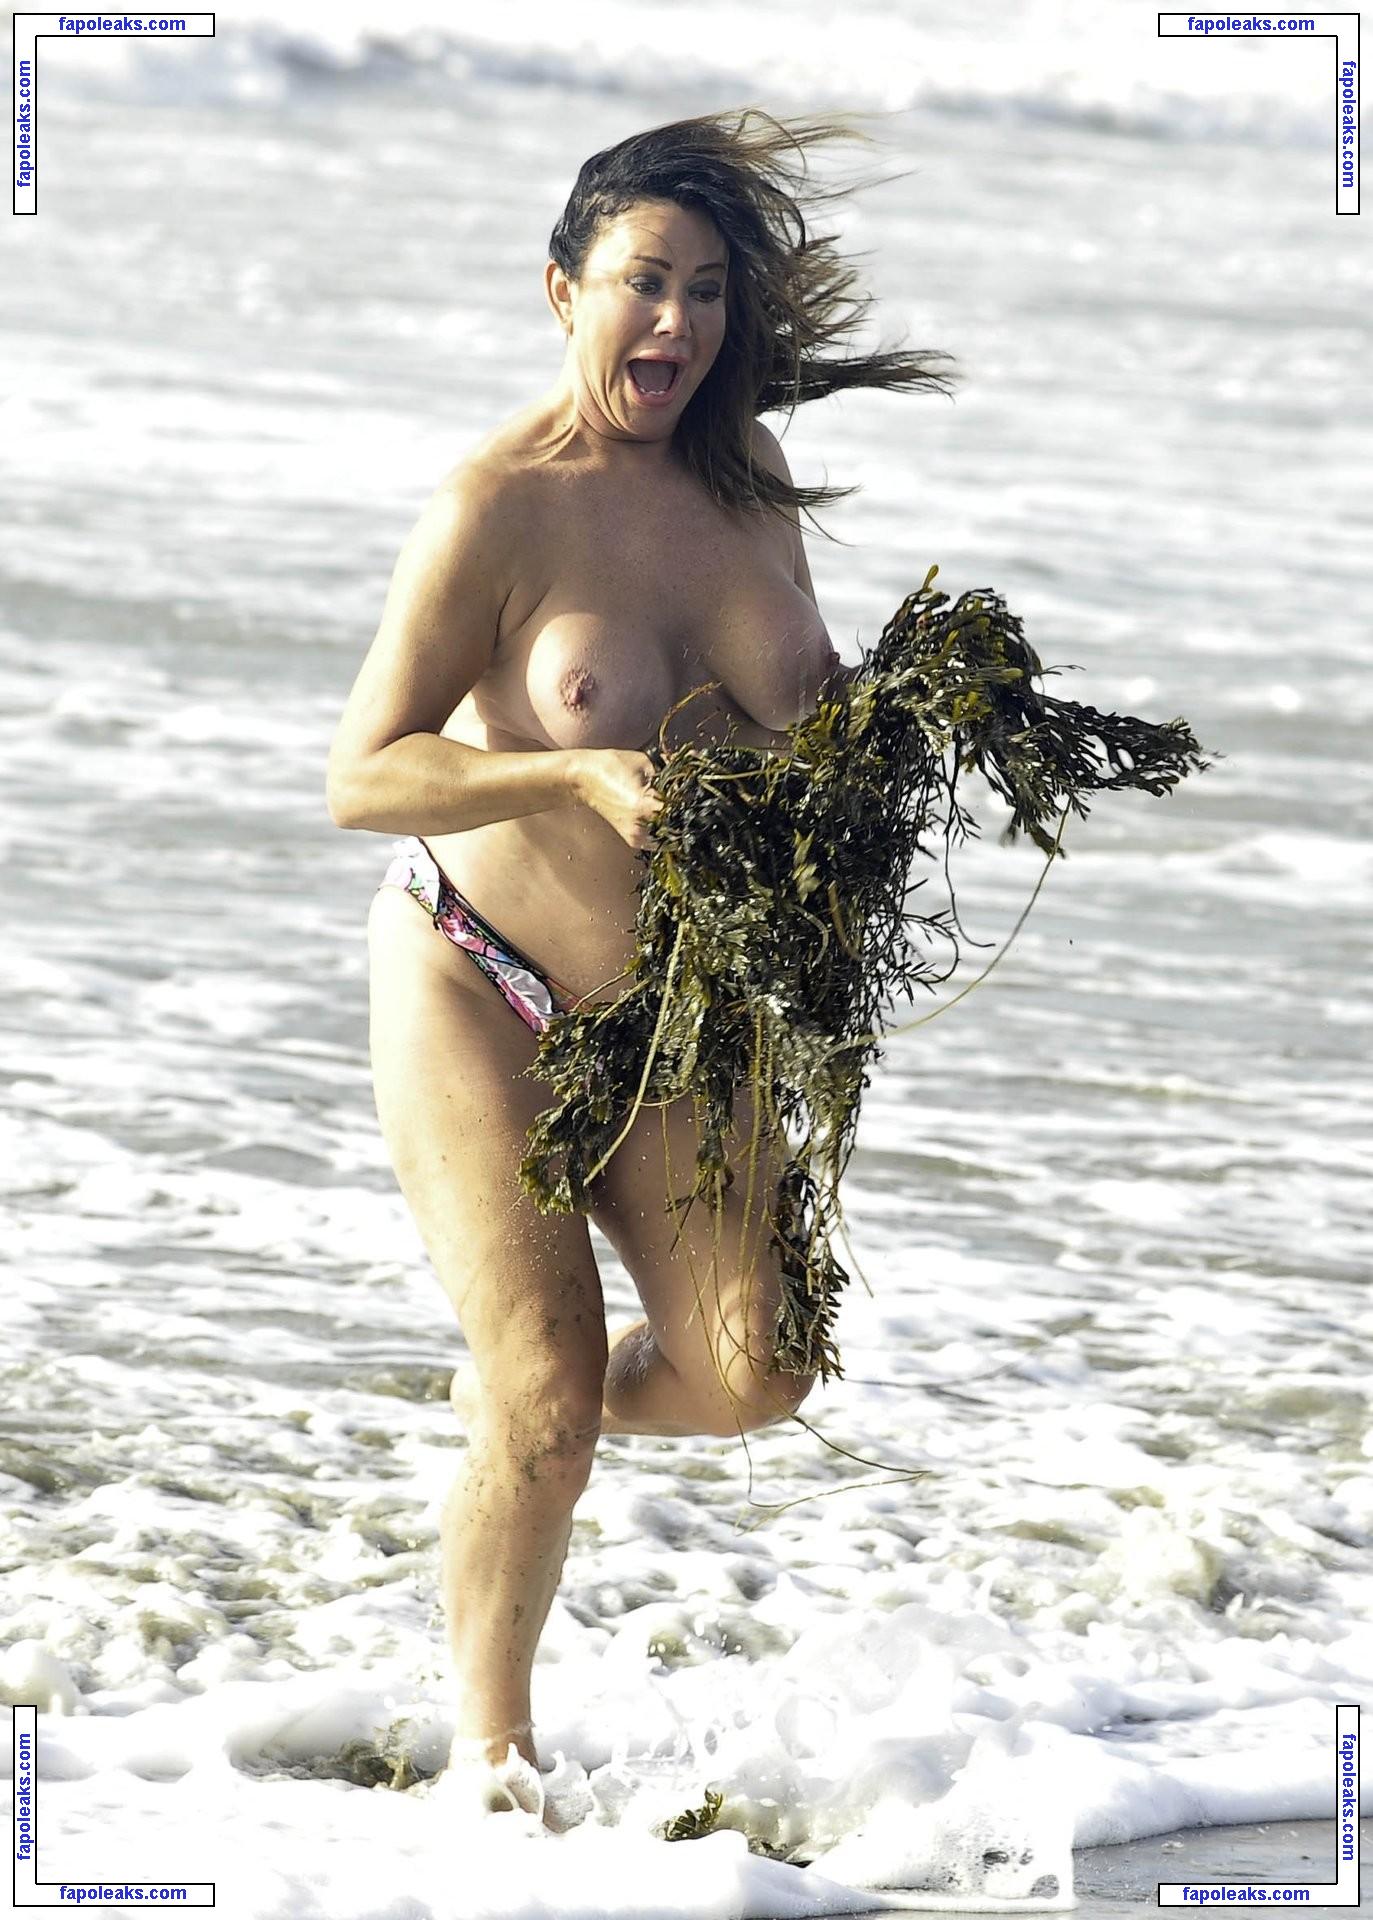 Lisa Appleton / mslisaappleton nude photo #2630 from OnlyFans